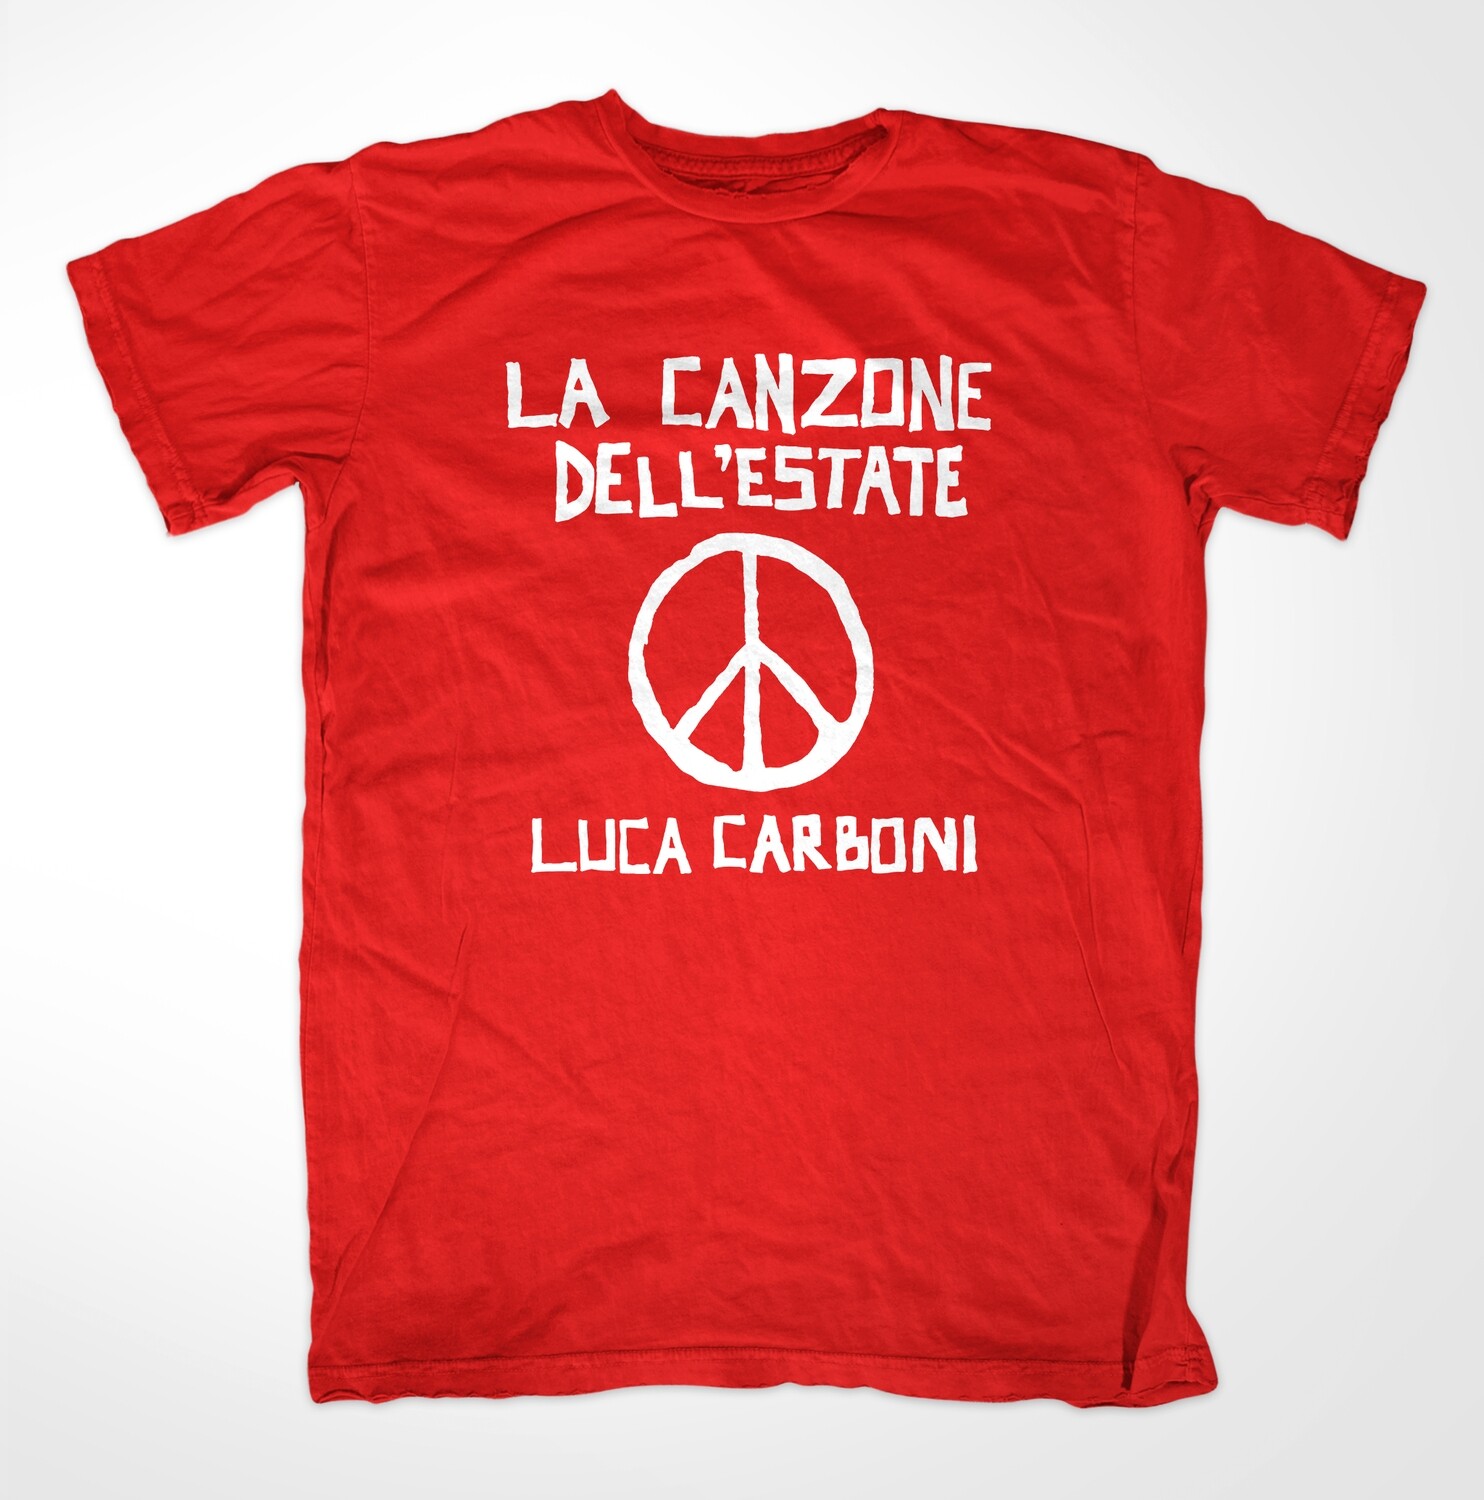 T-shirt ROSSA, UNISEX "La Canzone dell'estate" - Luca Carboni